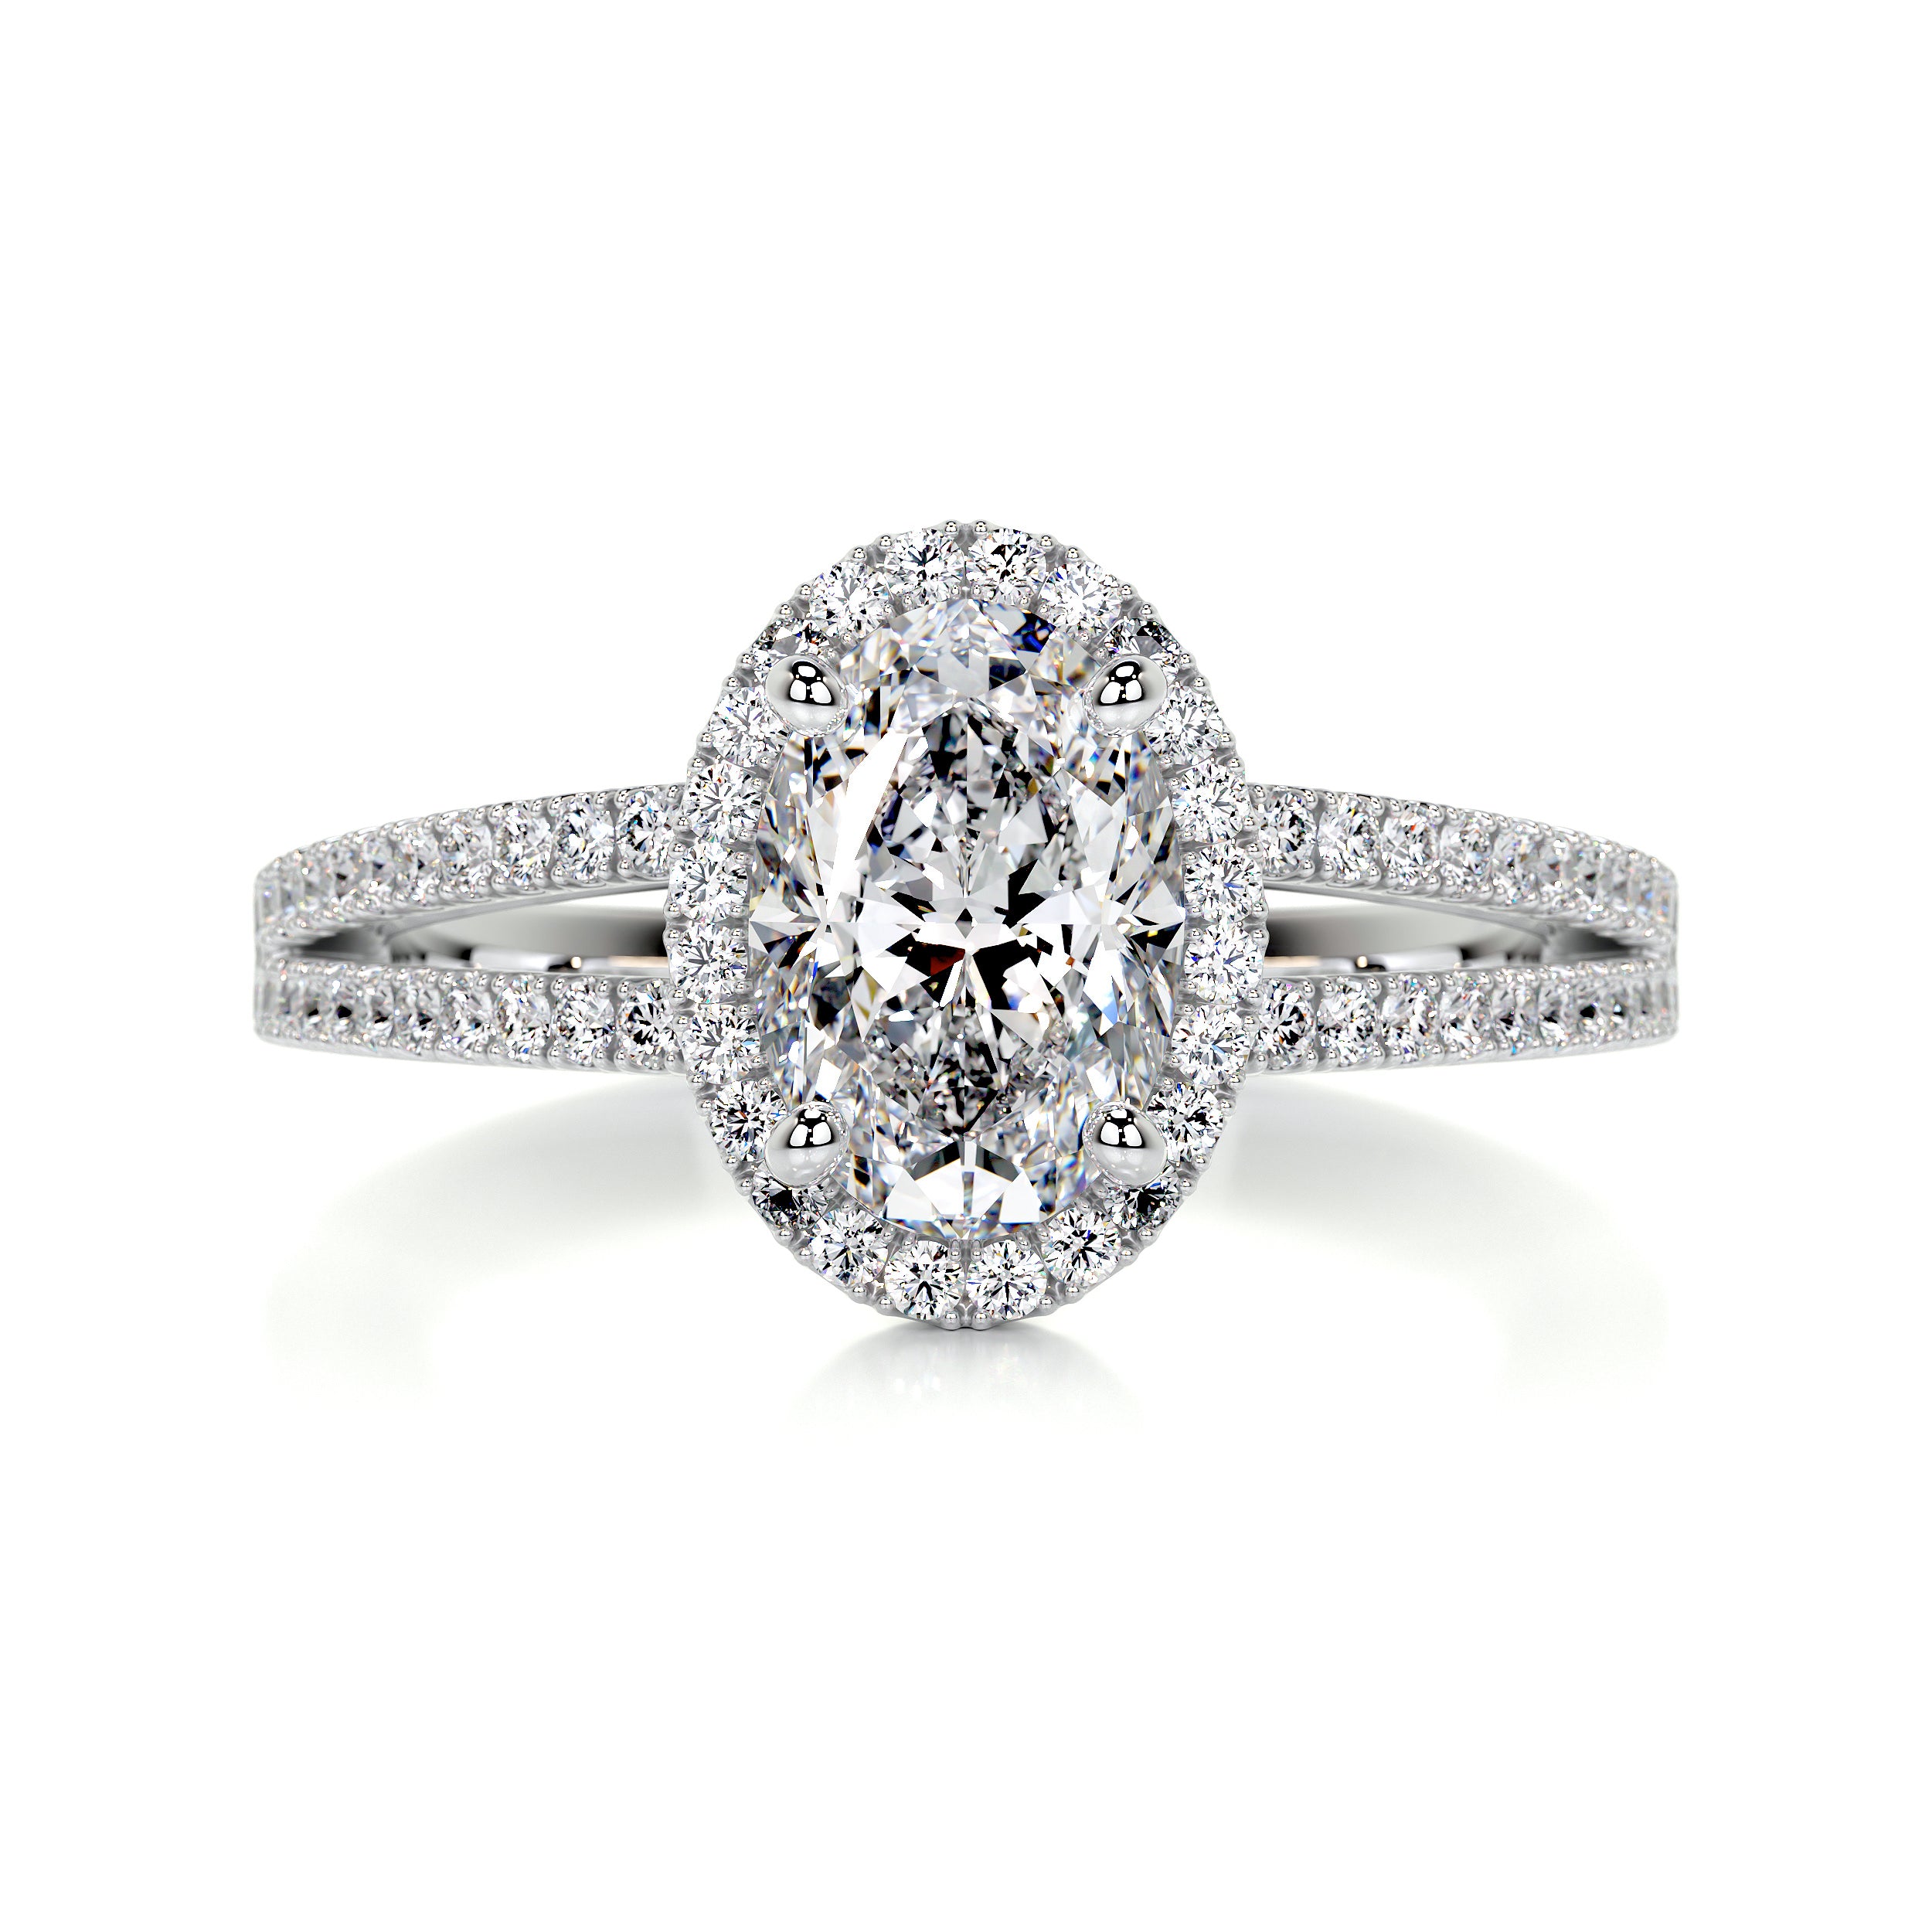 Brielle Diamond Engagement Ring   (1.2 Carat) -Platinum